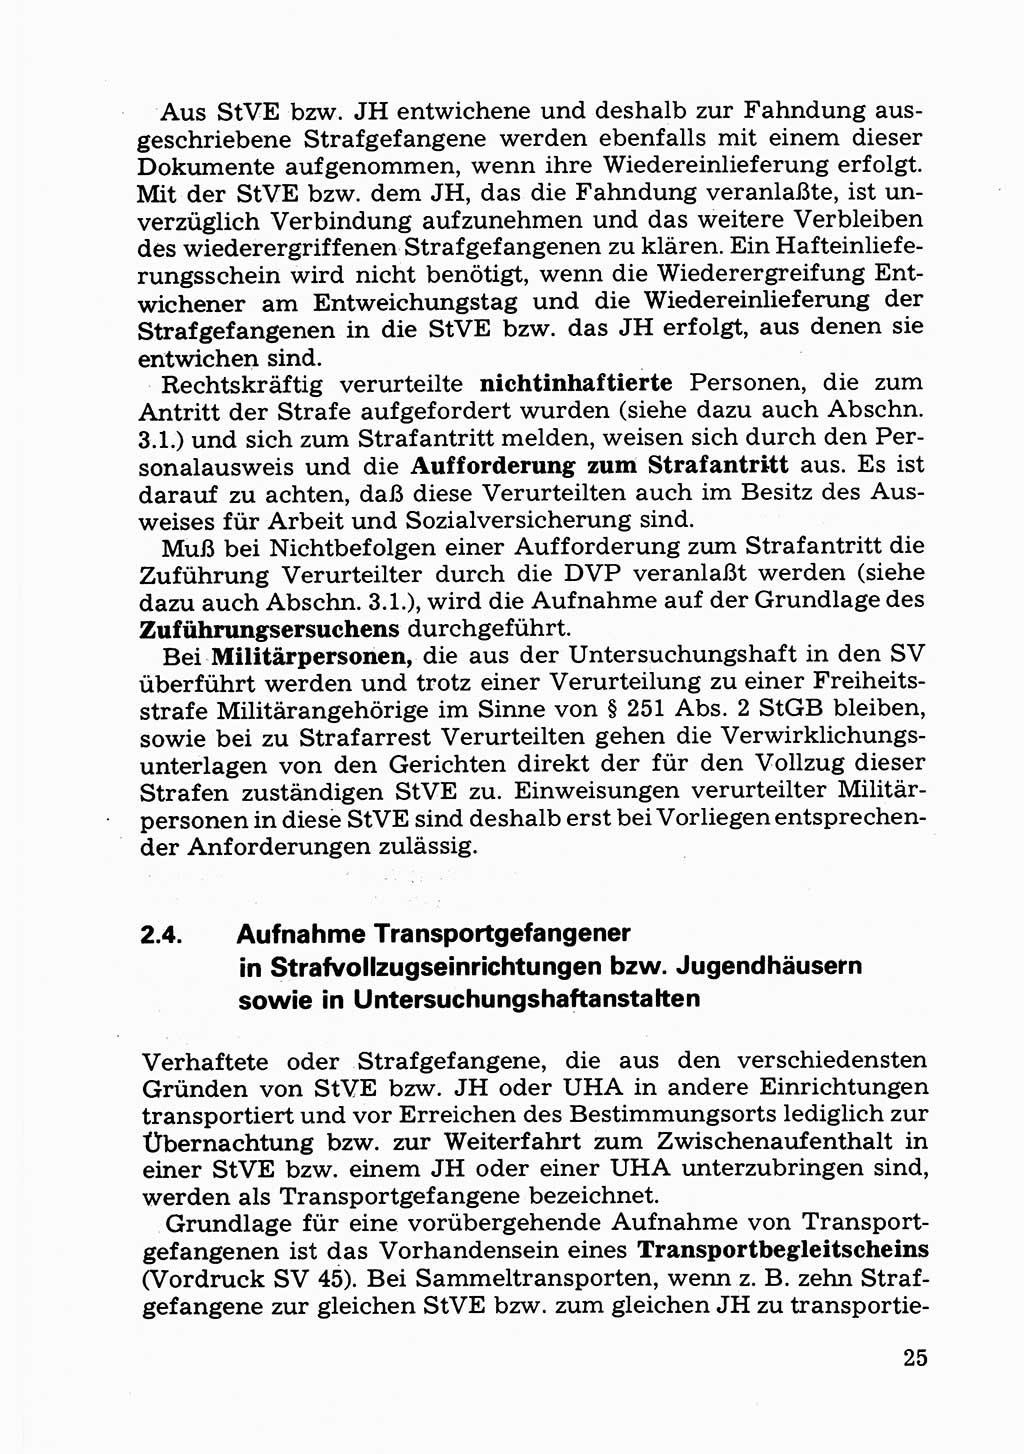 Verwaltungsmäßige Aufgaben beim Vollzug der Untersuchungshaft (U-Haft) sowie der Strafen mit Freiheitsentzug (SV) [Deutsche Demokratische Republik (DDR)] 1980, Seite 25 (Aufg. Vollz. U-Haft SV DDR 1980, S. 25)